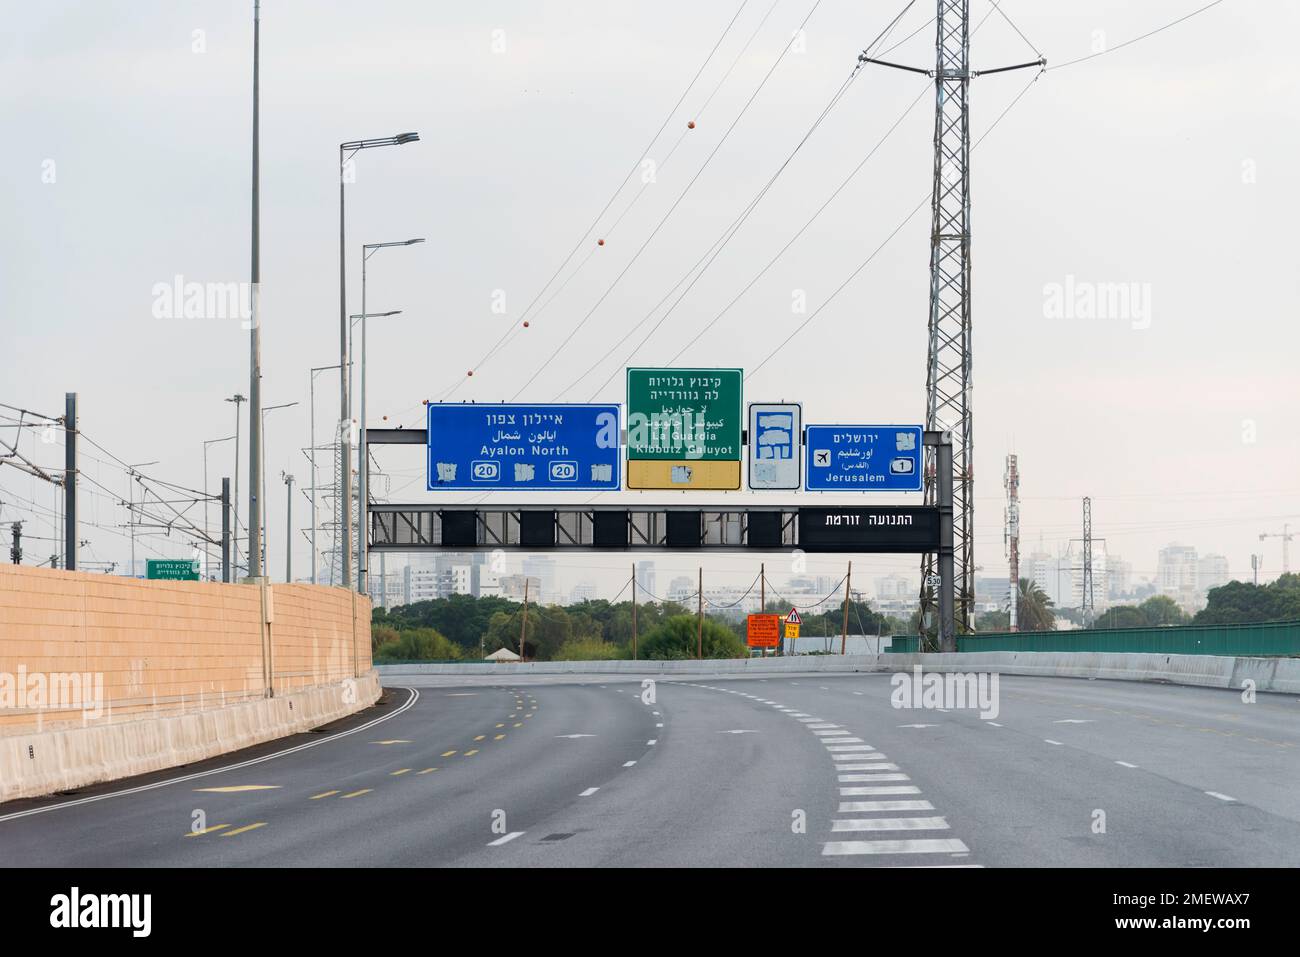 Indicazioni per Gerusalemme sull'autostrada 1 a Tel Aviv, indicazioni per la strada Israel Blue per l'aeroporto ben Gurion. Esci alla prima autostrada. Foto di alta qualità Foto Stock